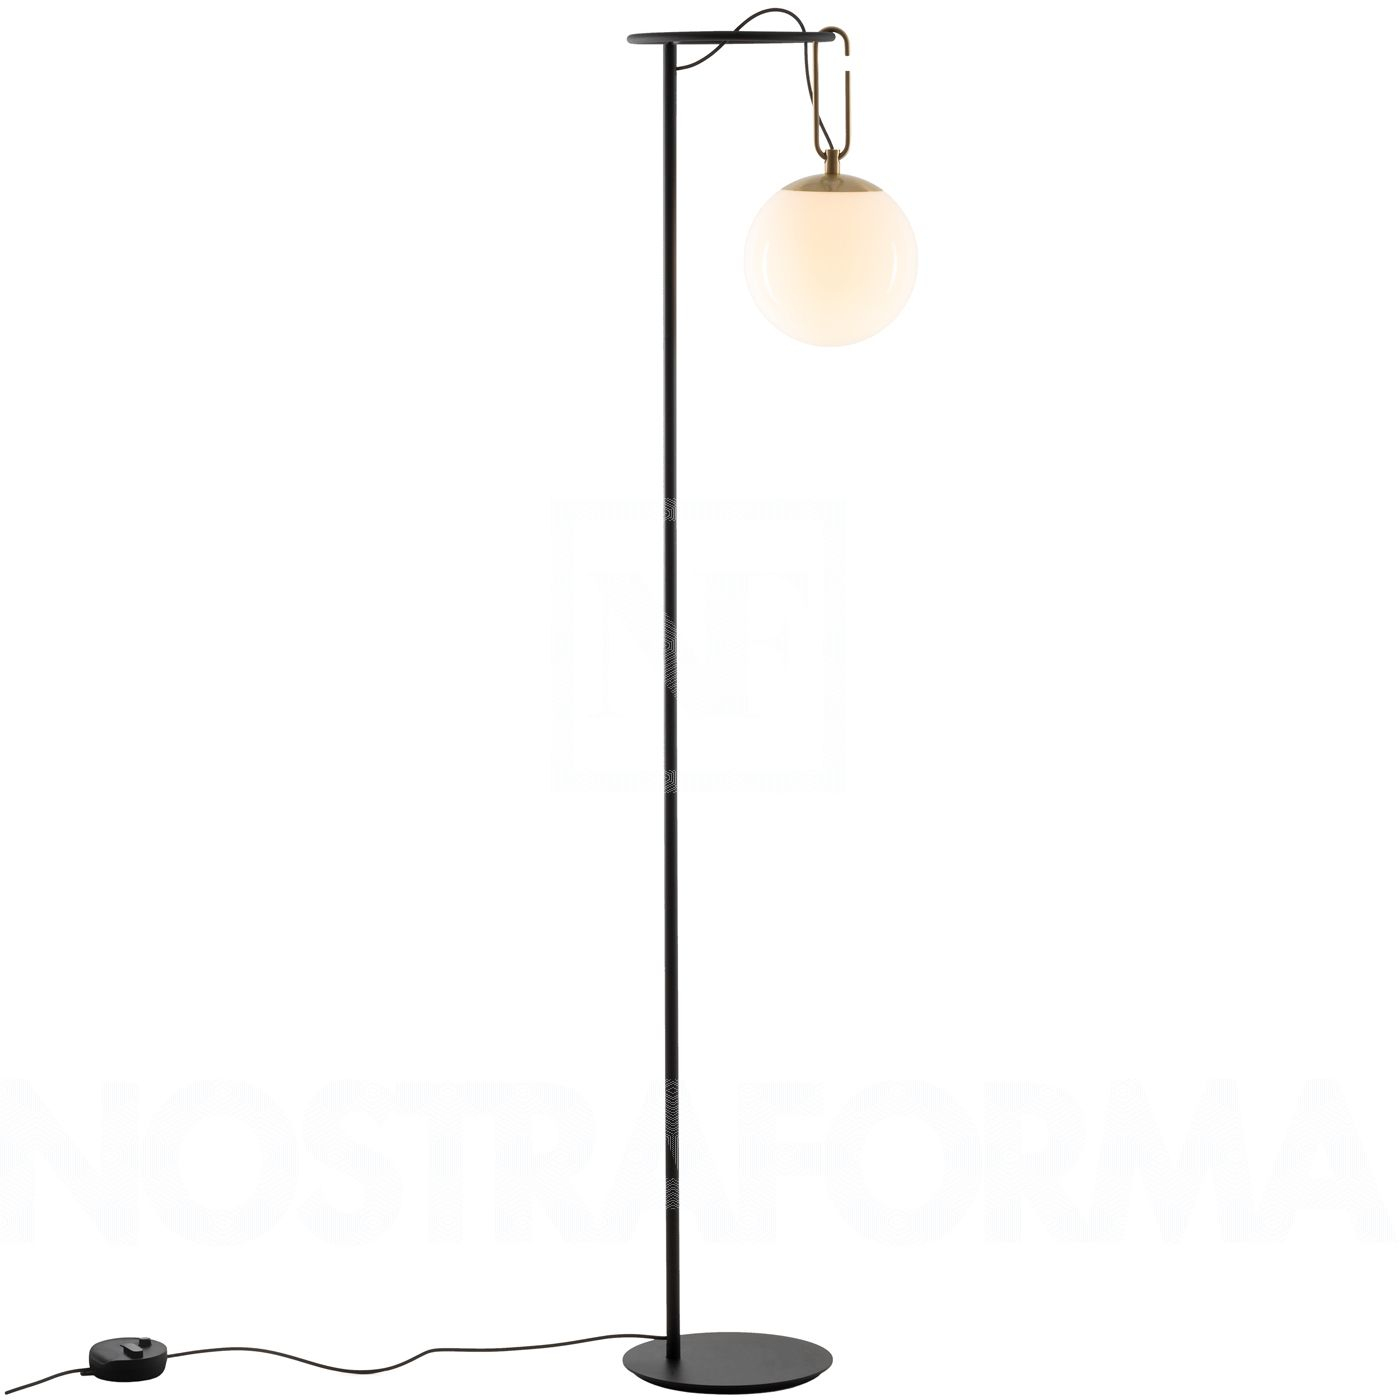 Artemide Nh 22 Floor Lamp At Nostraforma We Love Design in size 1400 X 1400